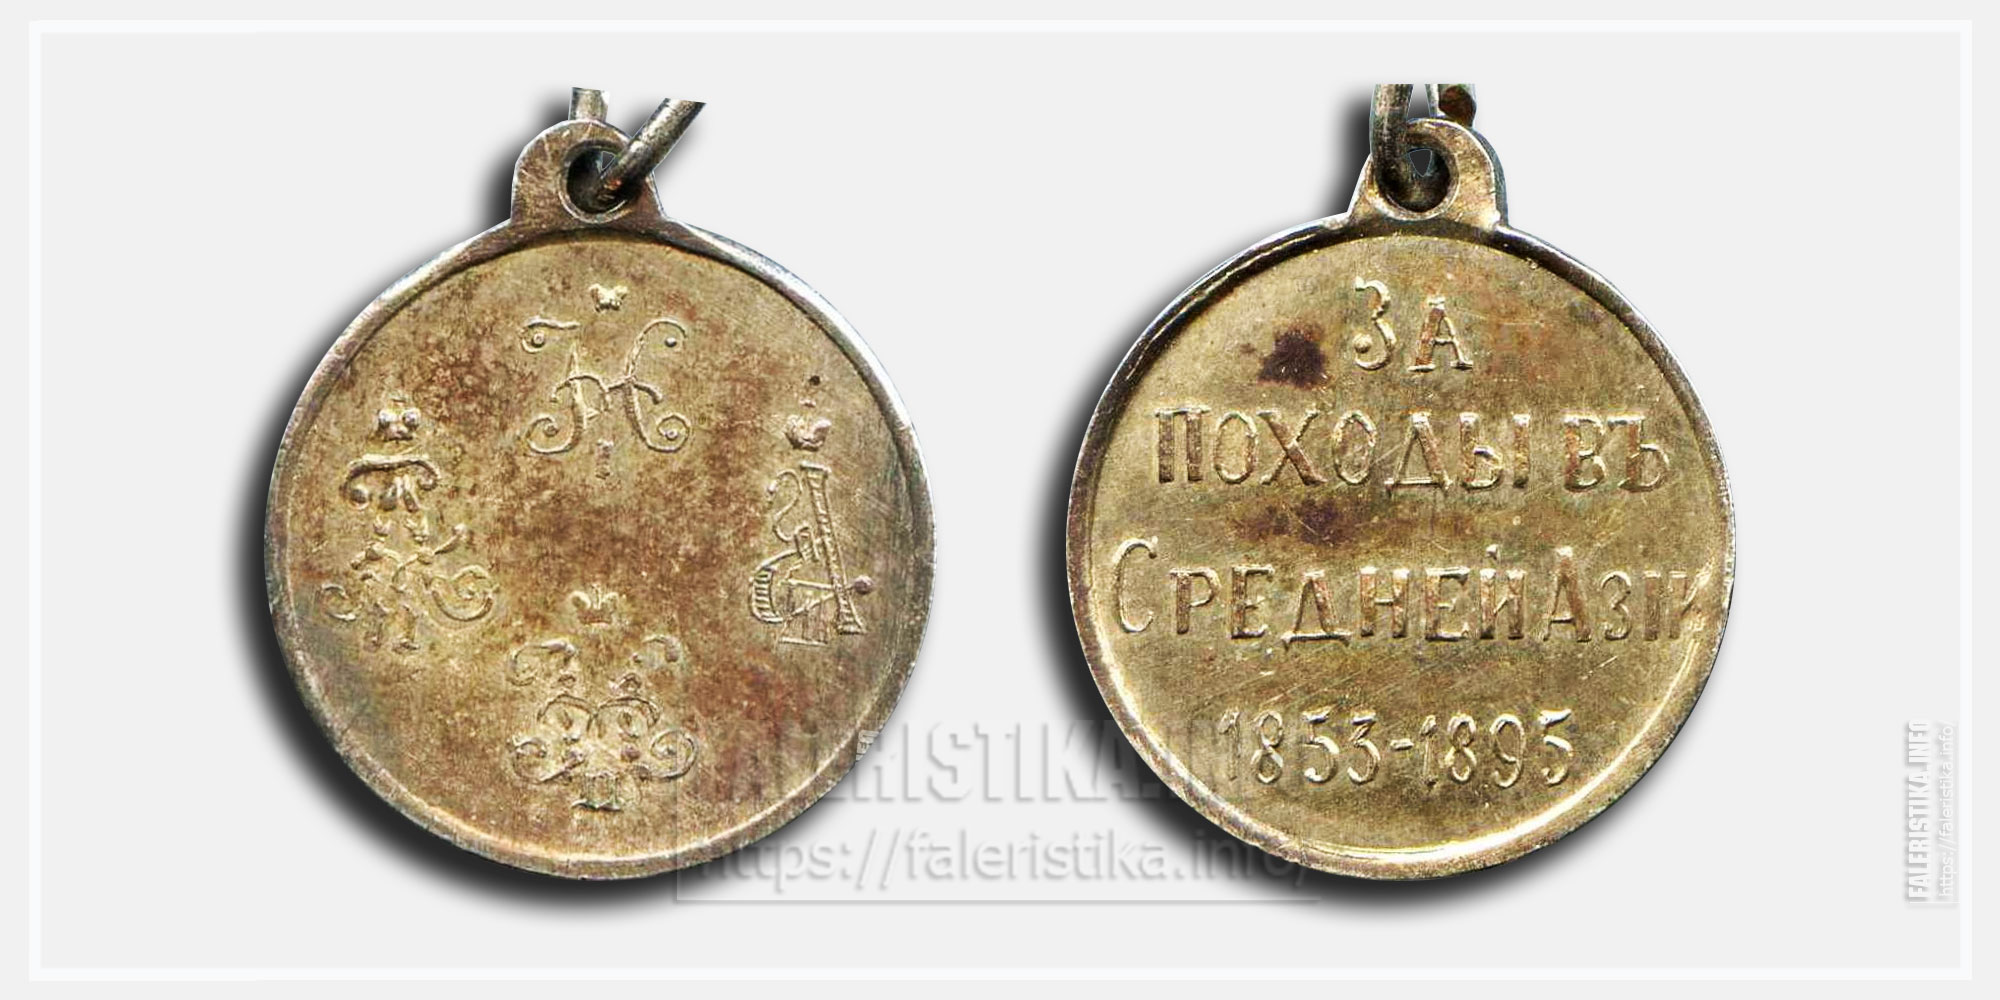 Медаль "За походы в Средней Азии 1853-1895" Фрачник